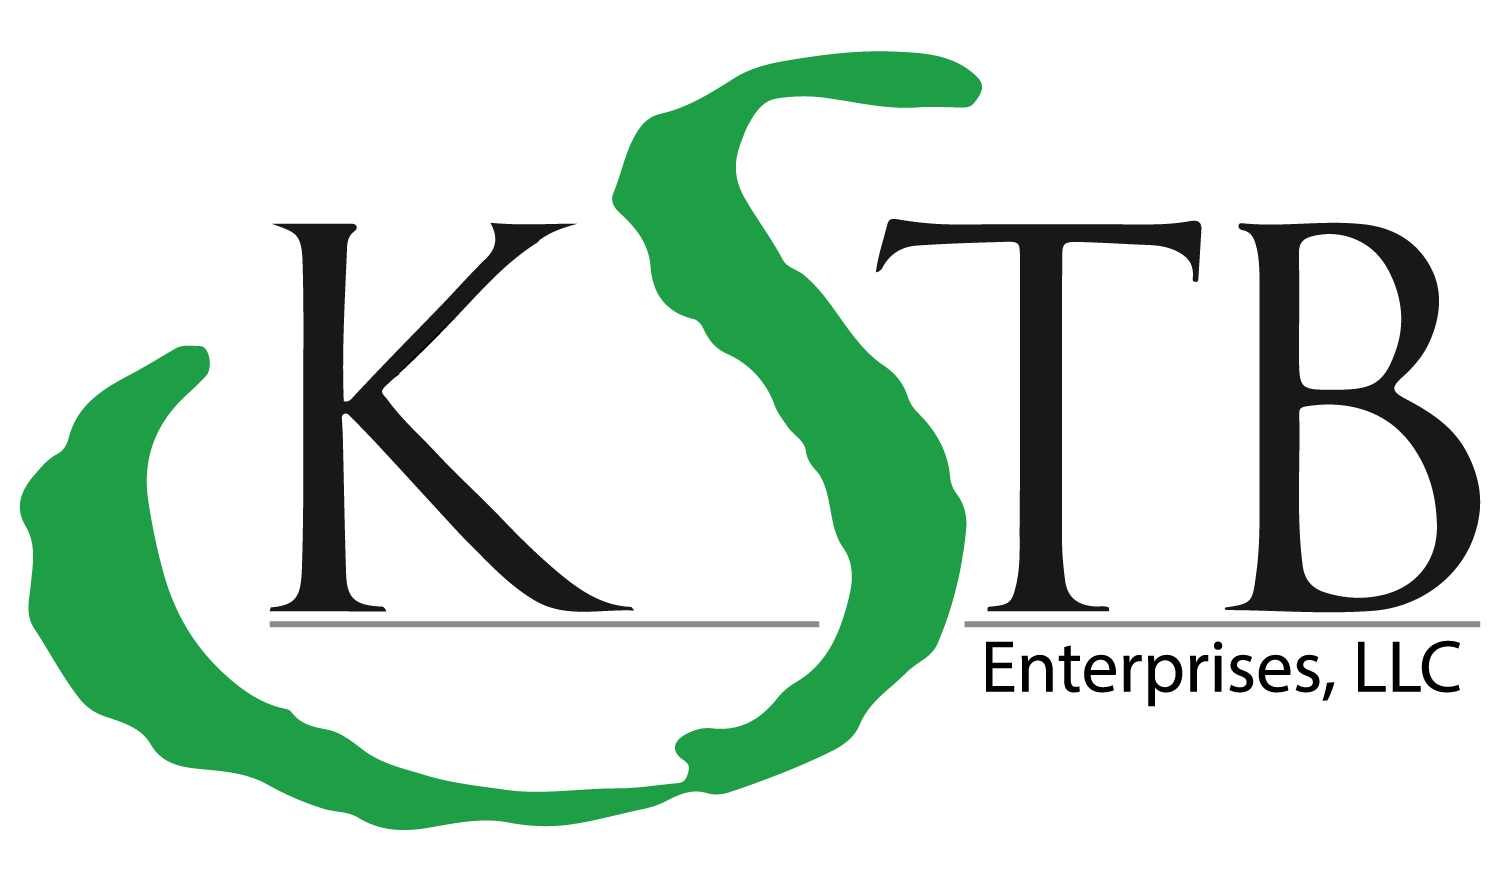 Official KSTB Enterprises Logo